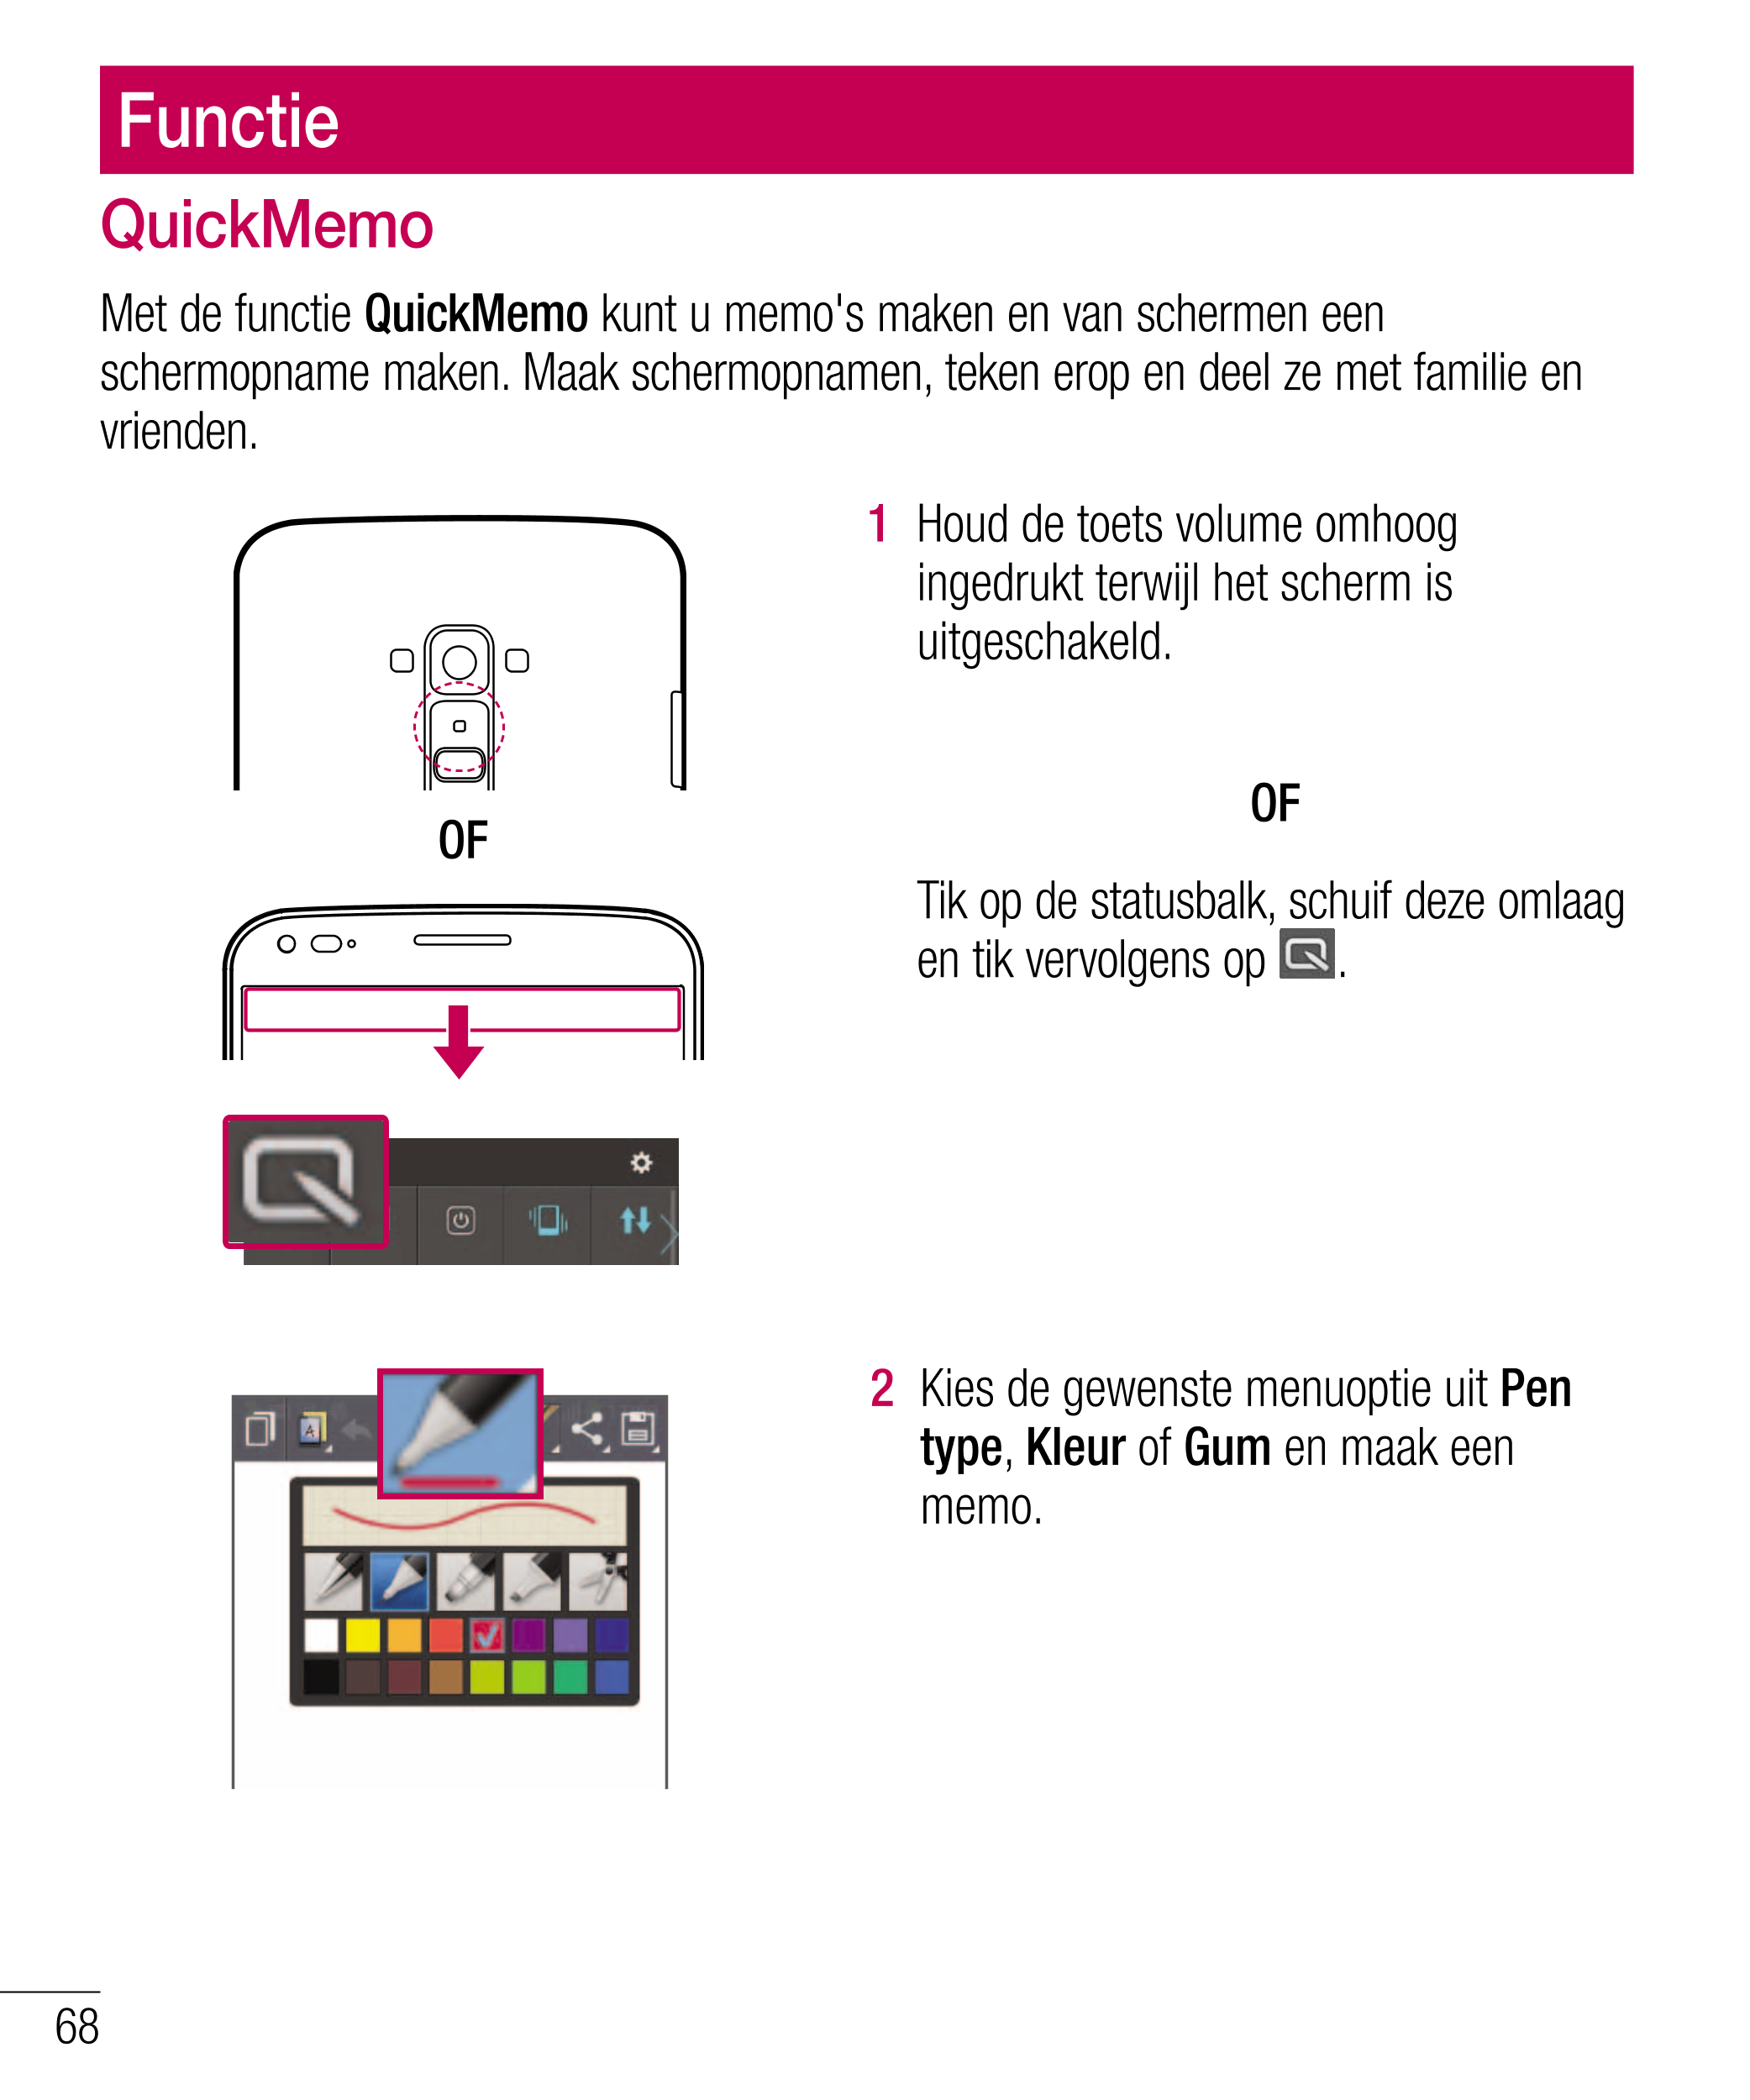 Functie
QuickMemo
Met de functie  QuickMemo  kunt u memo's maken en van schermen een 
schermopname maken. Maak schermopnamen, te